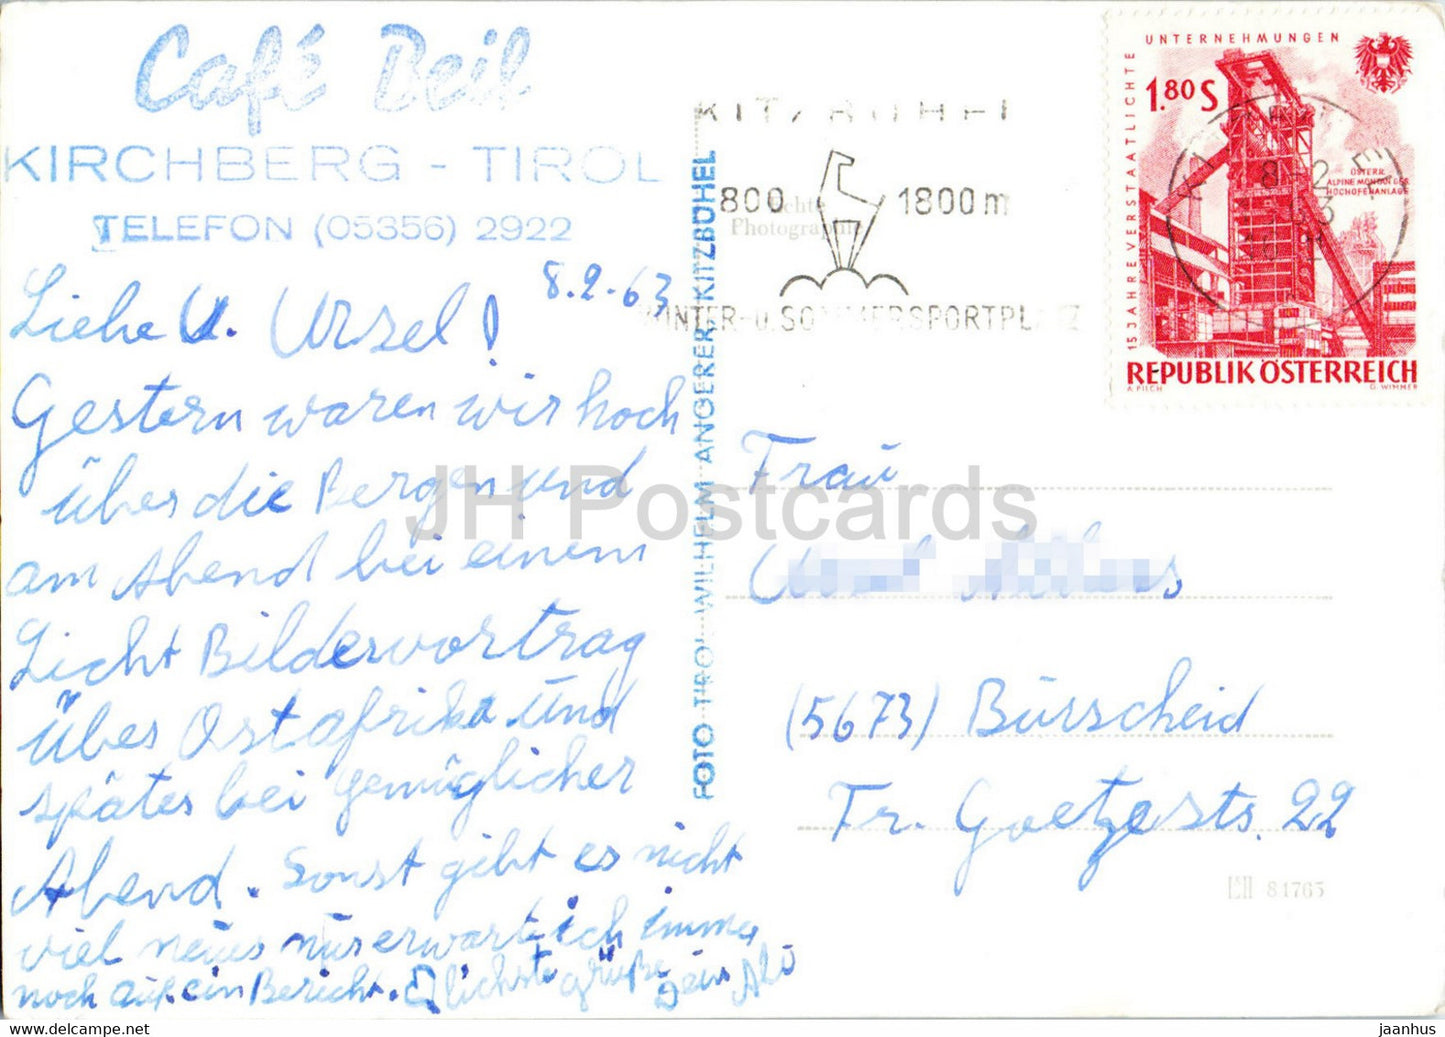 Cafe Beil - Kirchberg Tirol - alte Postkarte - 1963 - Österreich - gebraucht